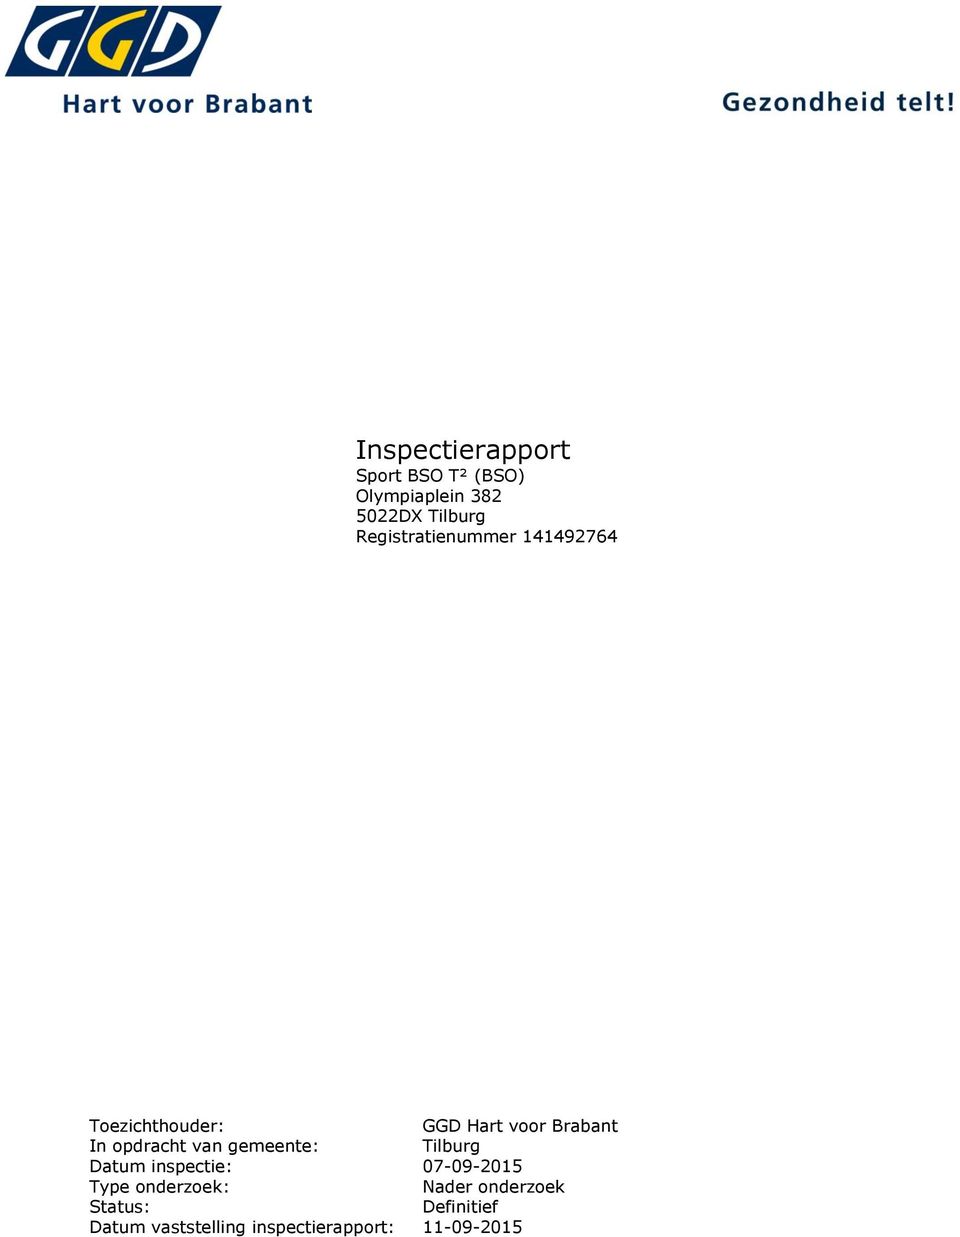 opdracht van gemeente: Tilburg Datum inspectie: 07-09-2015 Type onderzoek